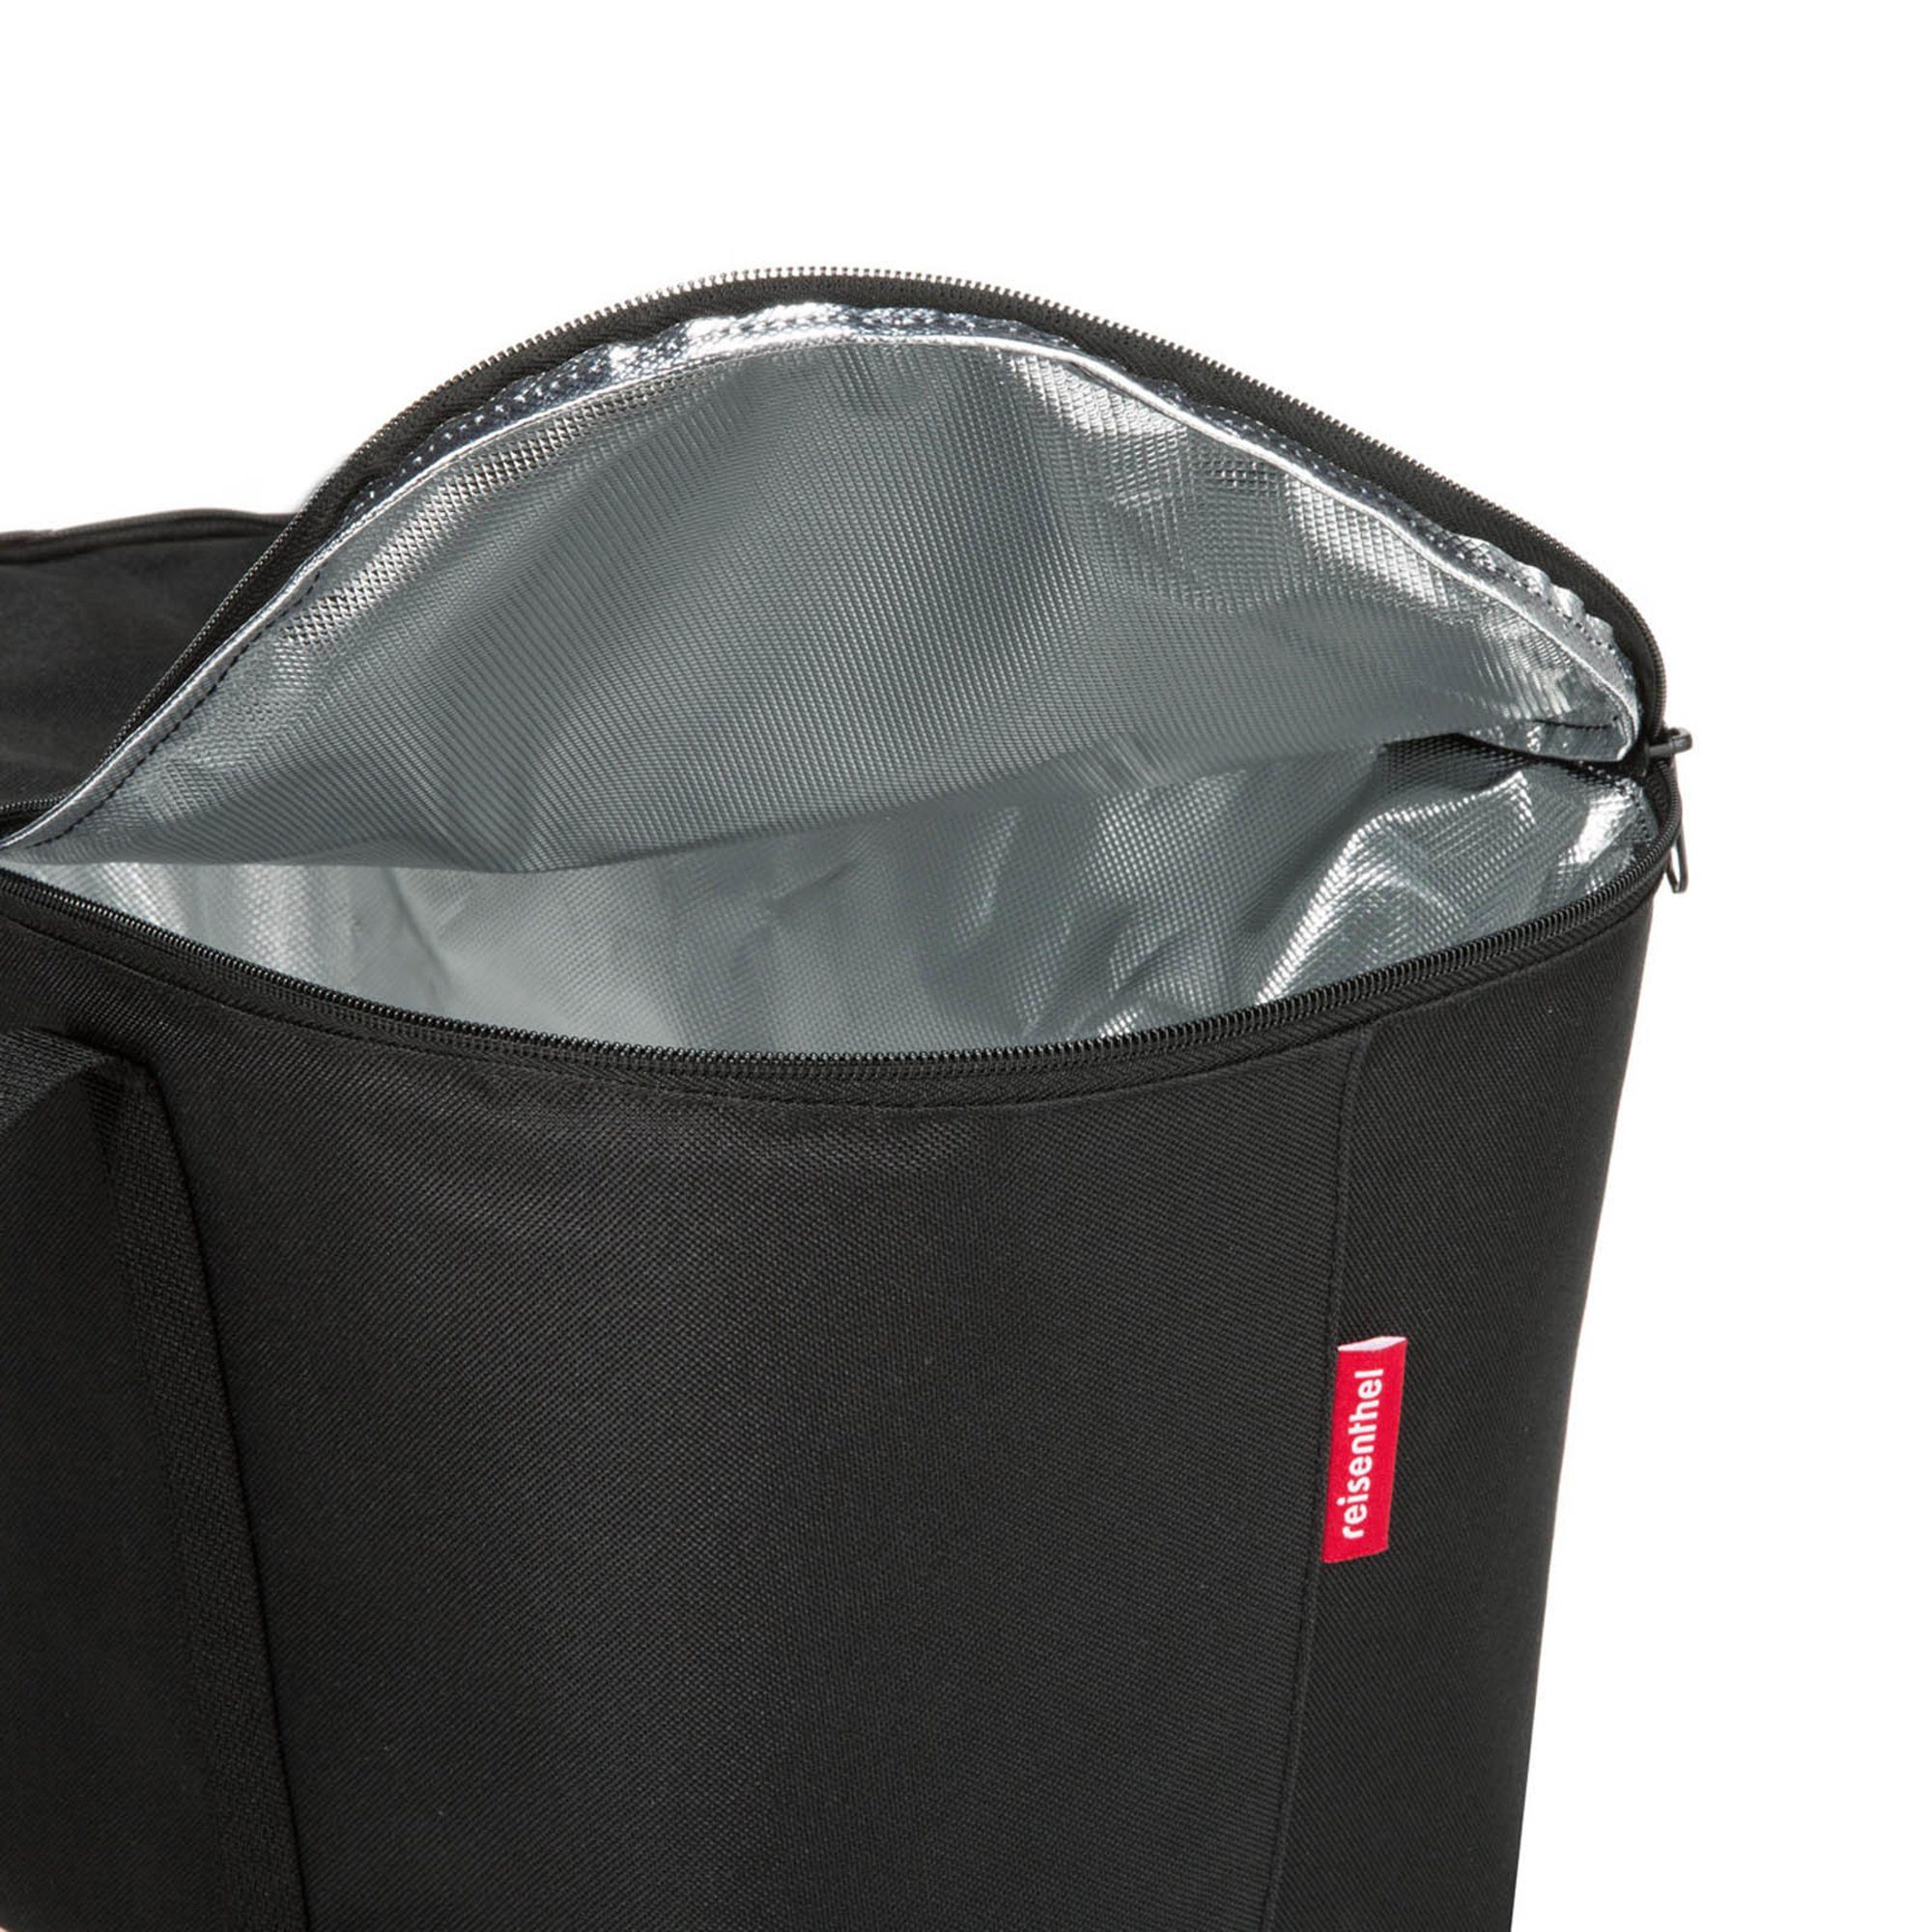 Kühltasche Aufbewahrungstasche Kühltasche REISENTHEL® black coolerbag,